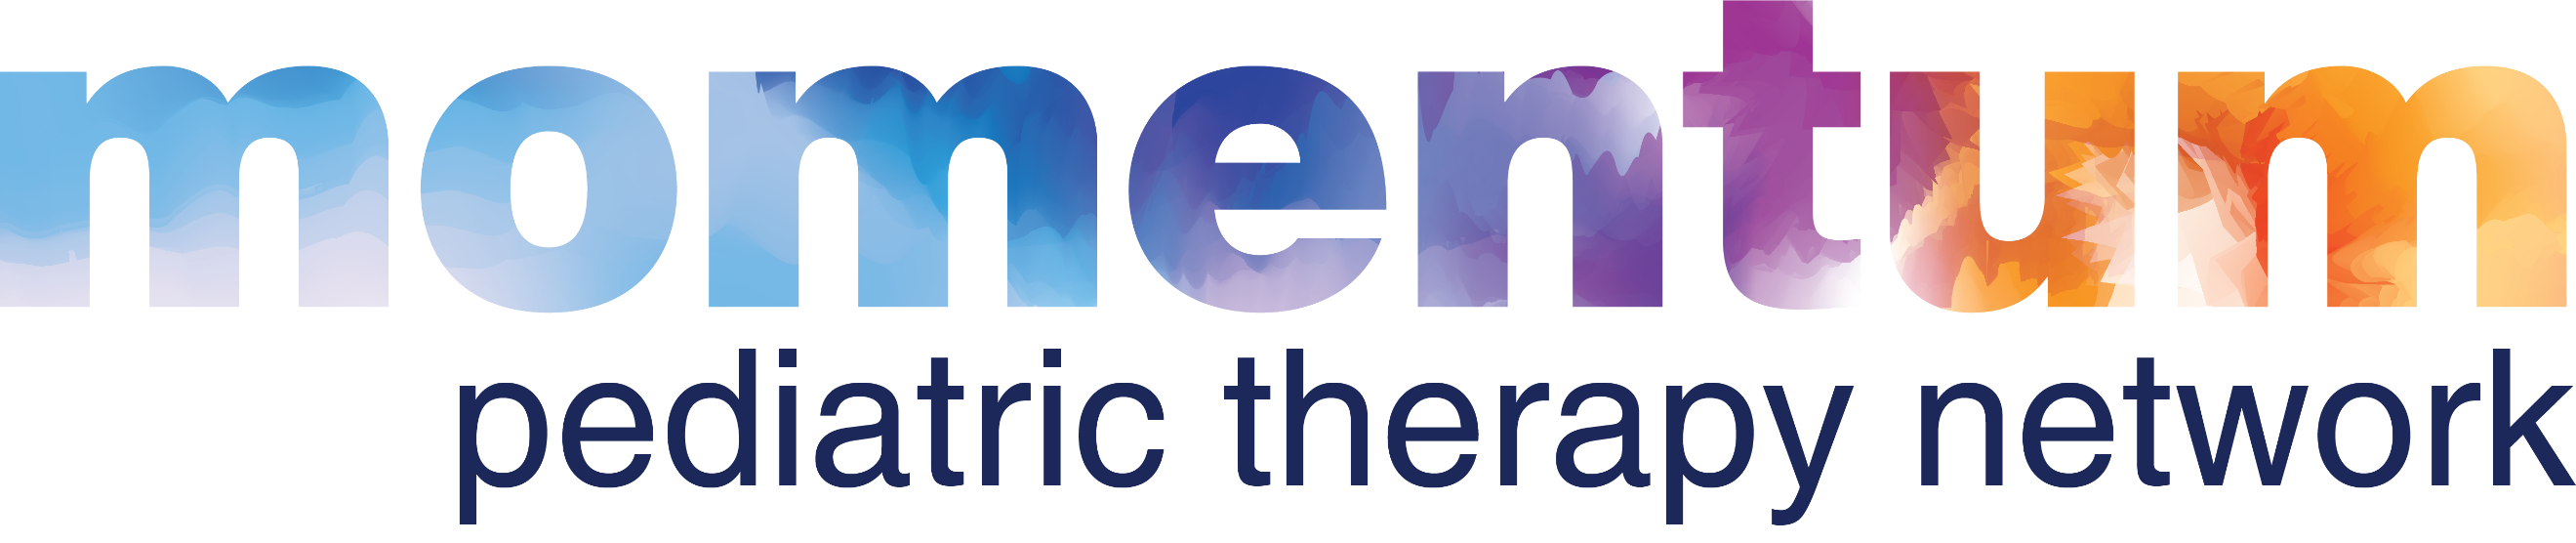 Pediatric Therapy Network's Logo